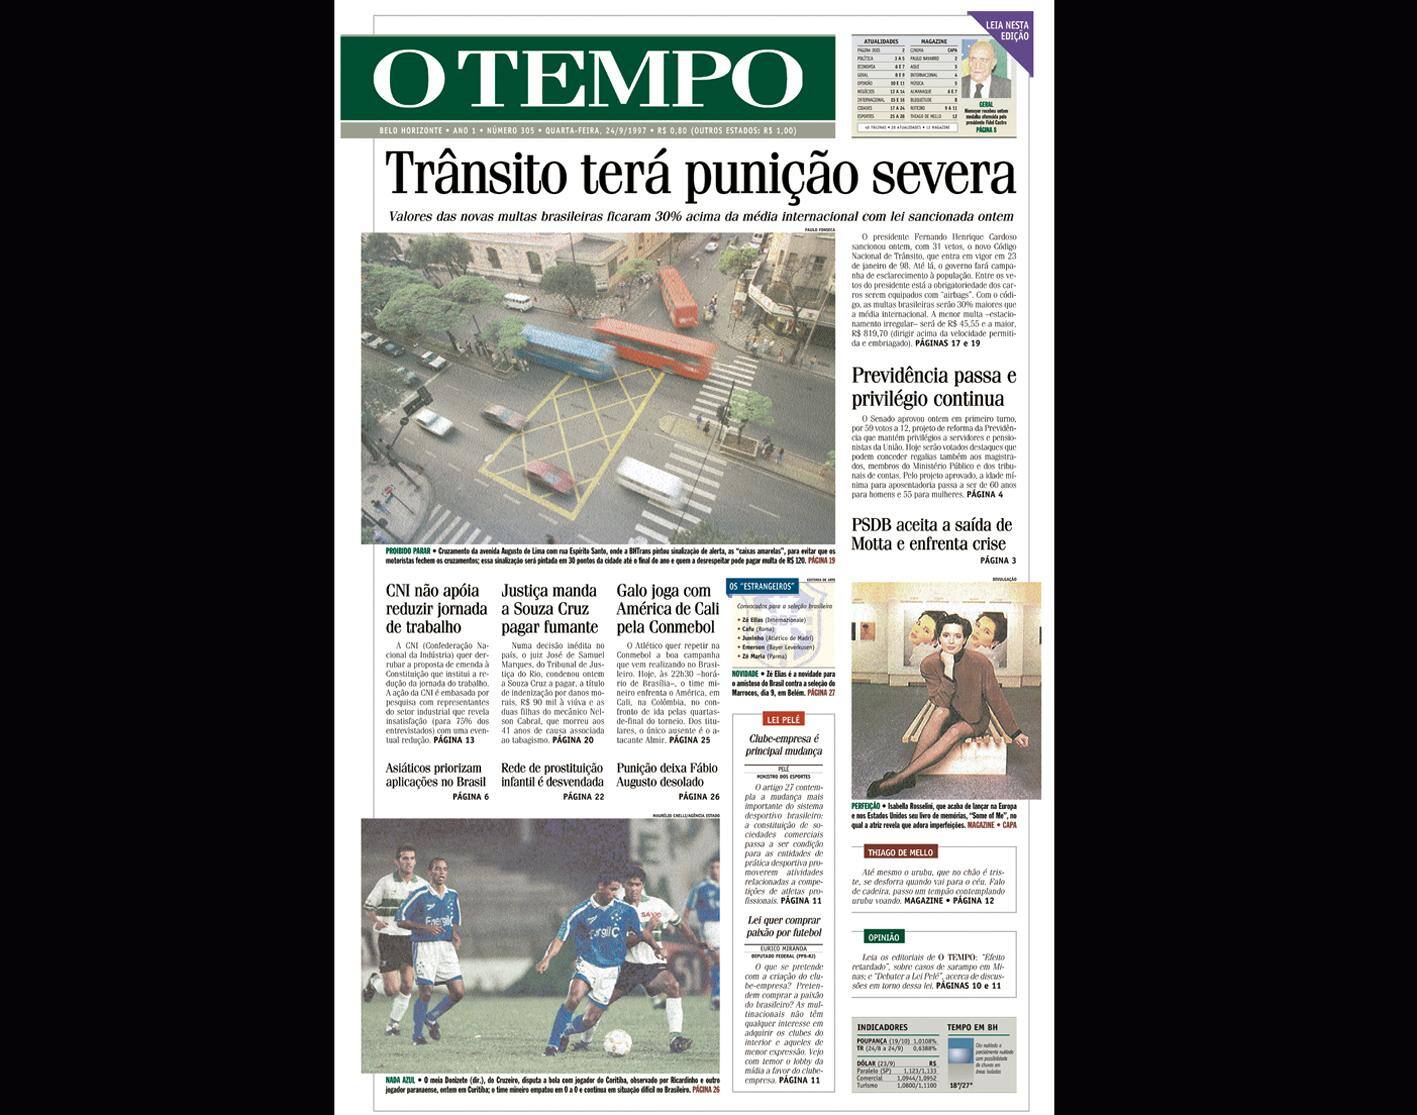 Capa do jornal O TEMPO no dia 24.9.1997; resgate do acervo marca as comemorações dos 25 anos da publicação